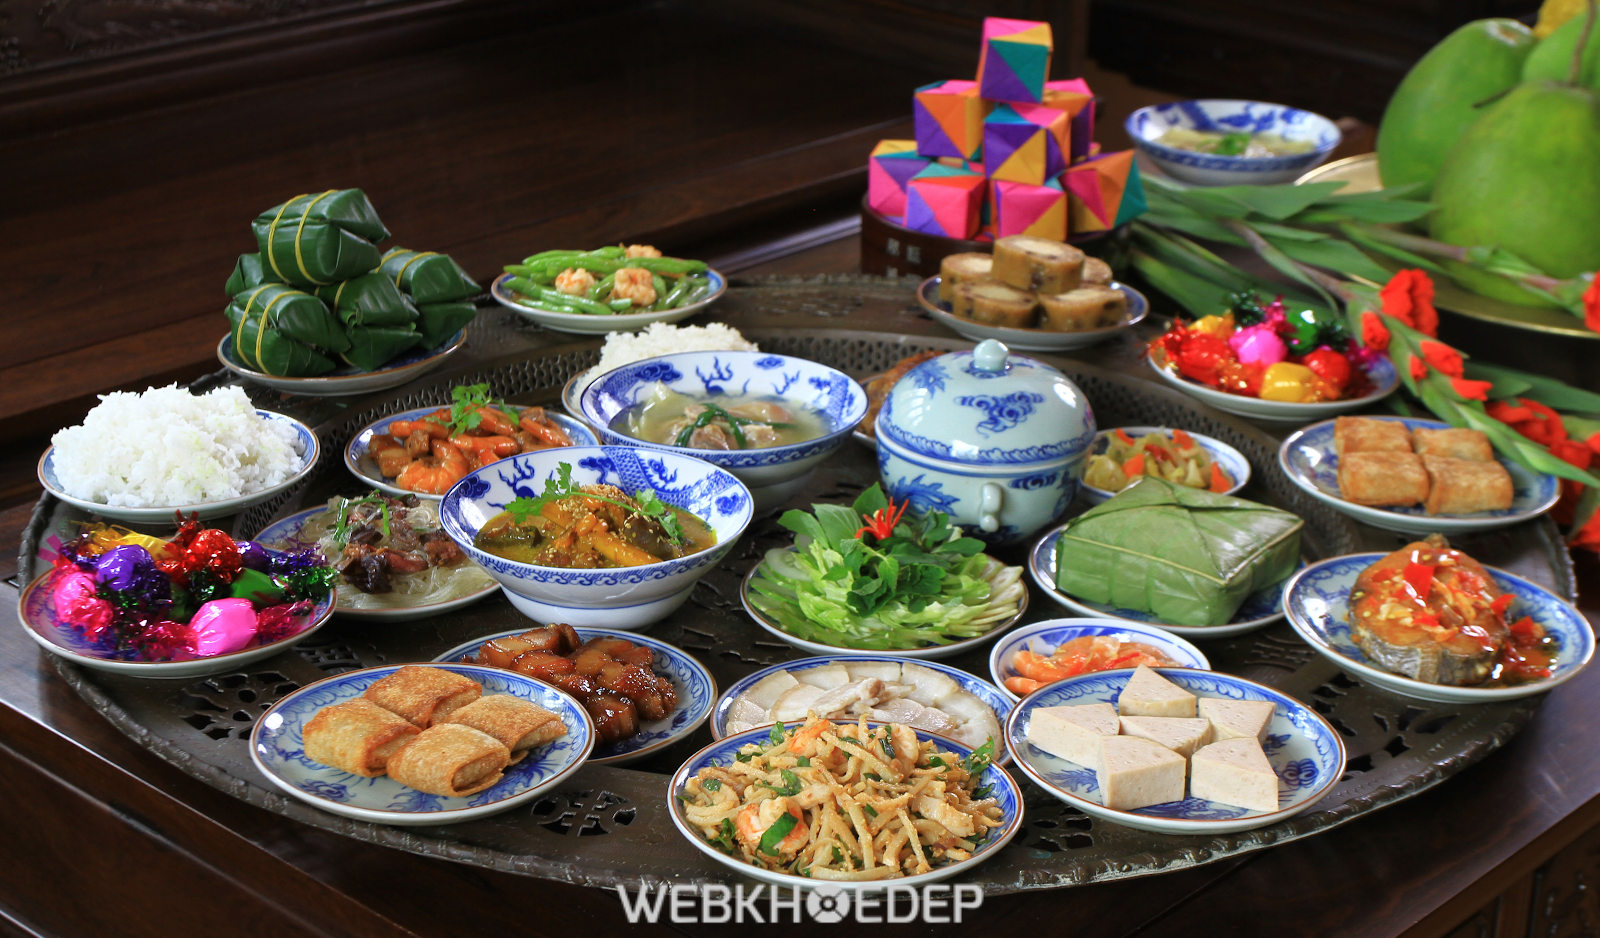 Những món ăn trong mâm cỗ người miền Trung